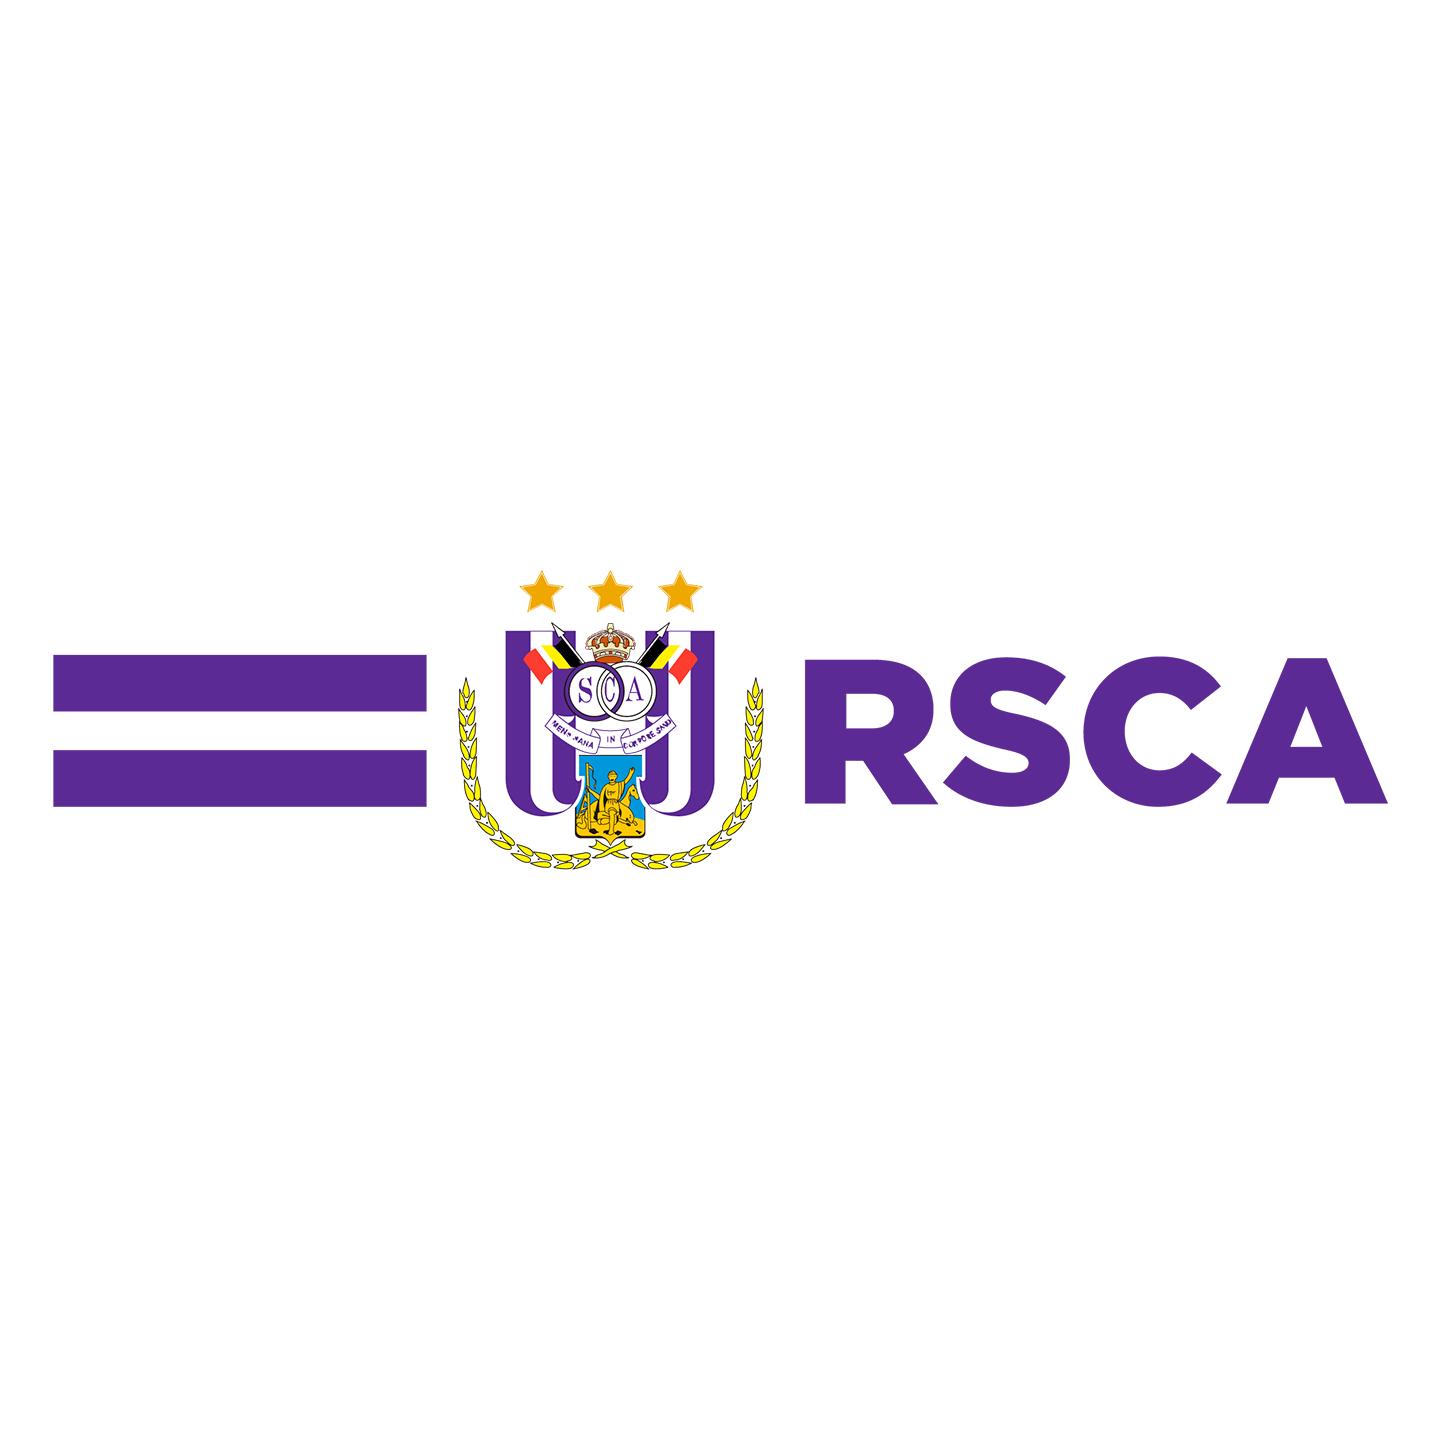 Pro Bio Products - het logo van RSCA Anderlecht